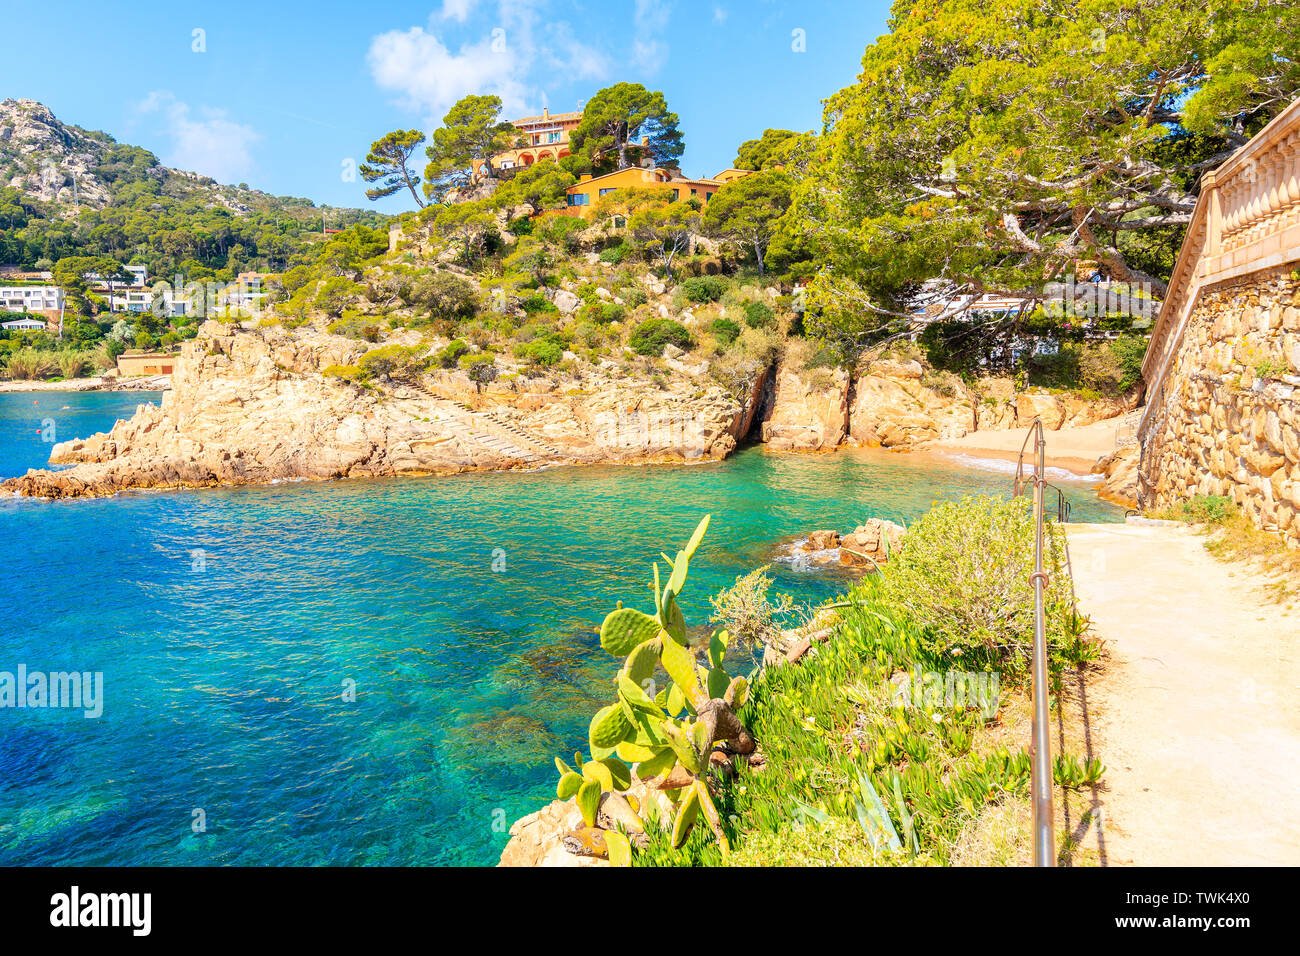 Sentier du littoral le long de la mer dans le village pittoresque de Fornells, Costa Brava, Espagne Banque D'Images